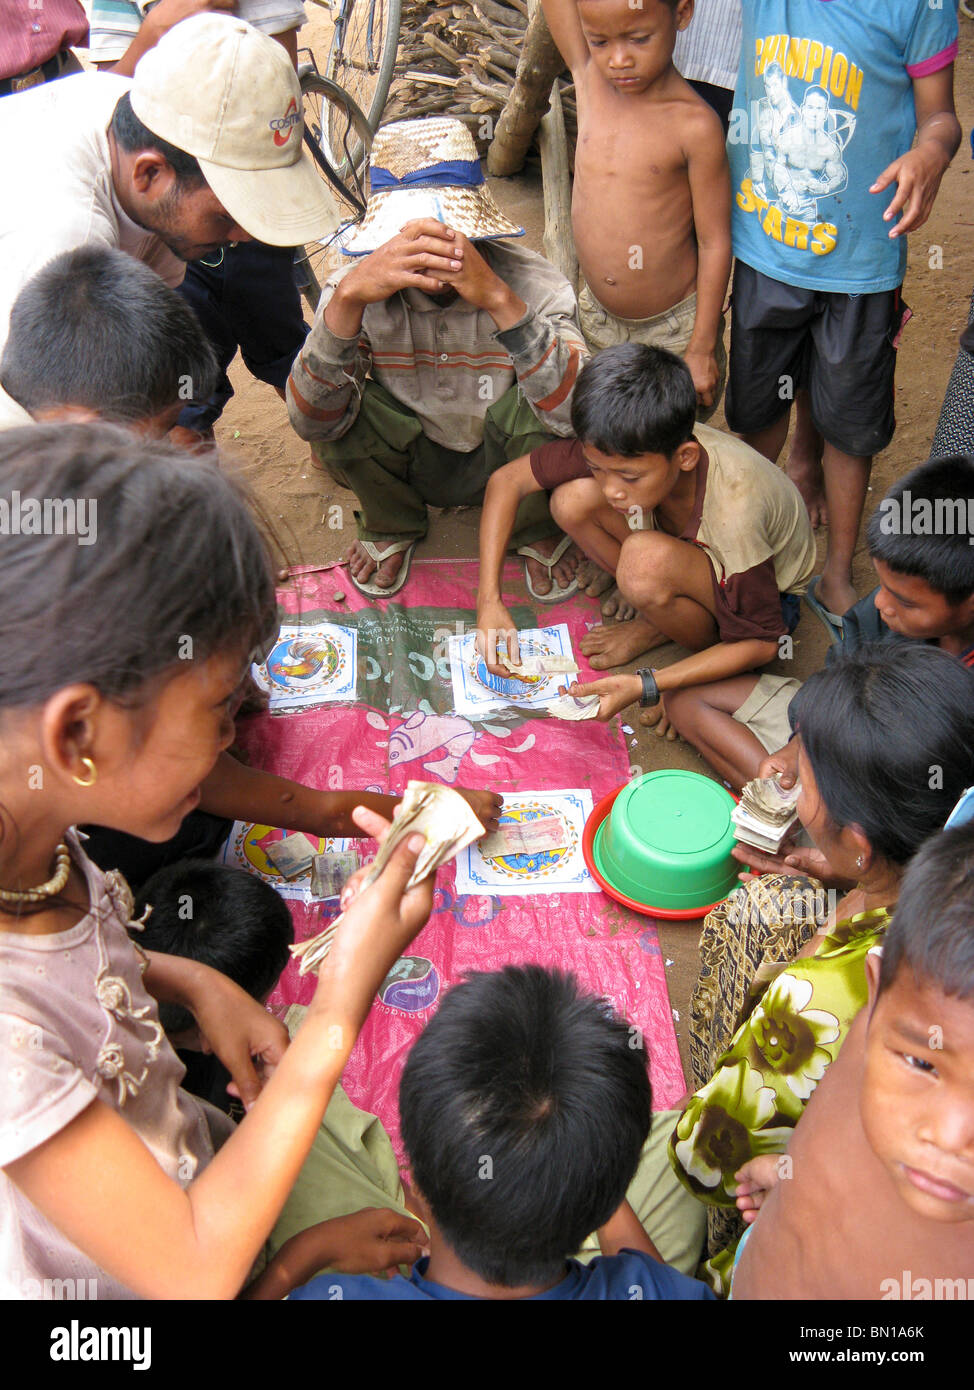 villagers gambling at game, Kompong Phluk village, Tonle Sap Lake, Cambodia Stock Photo